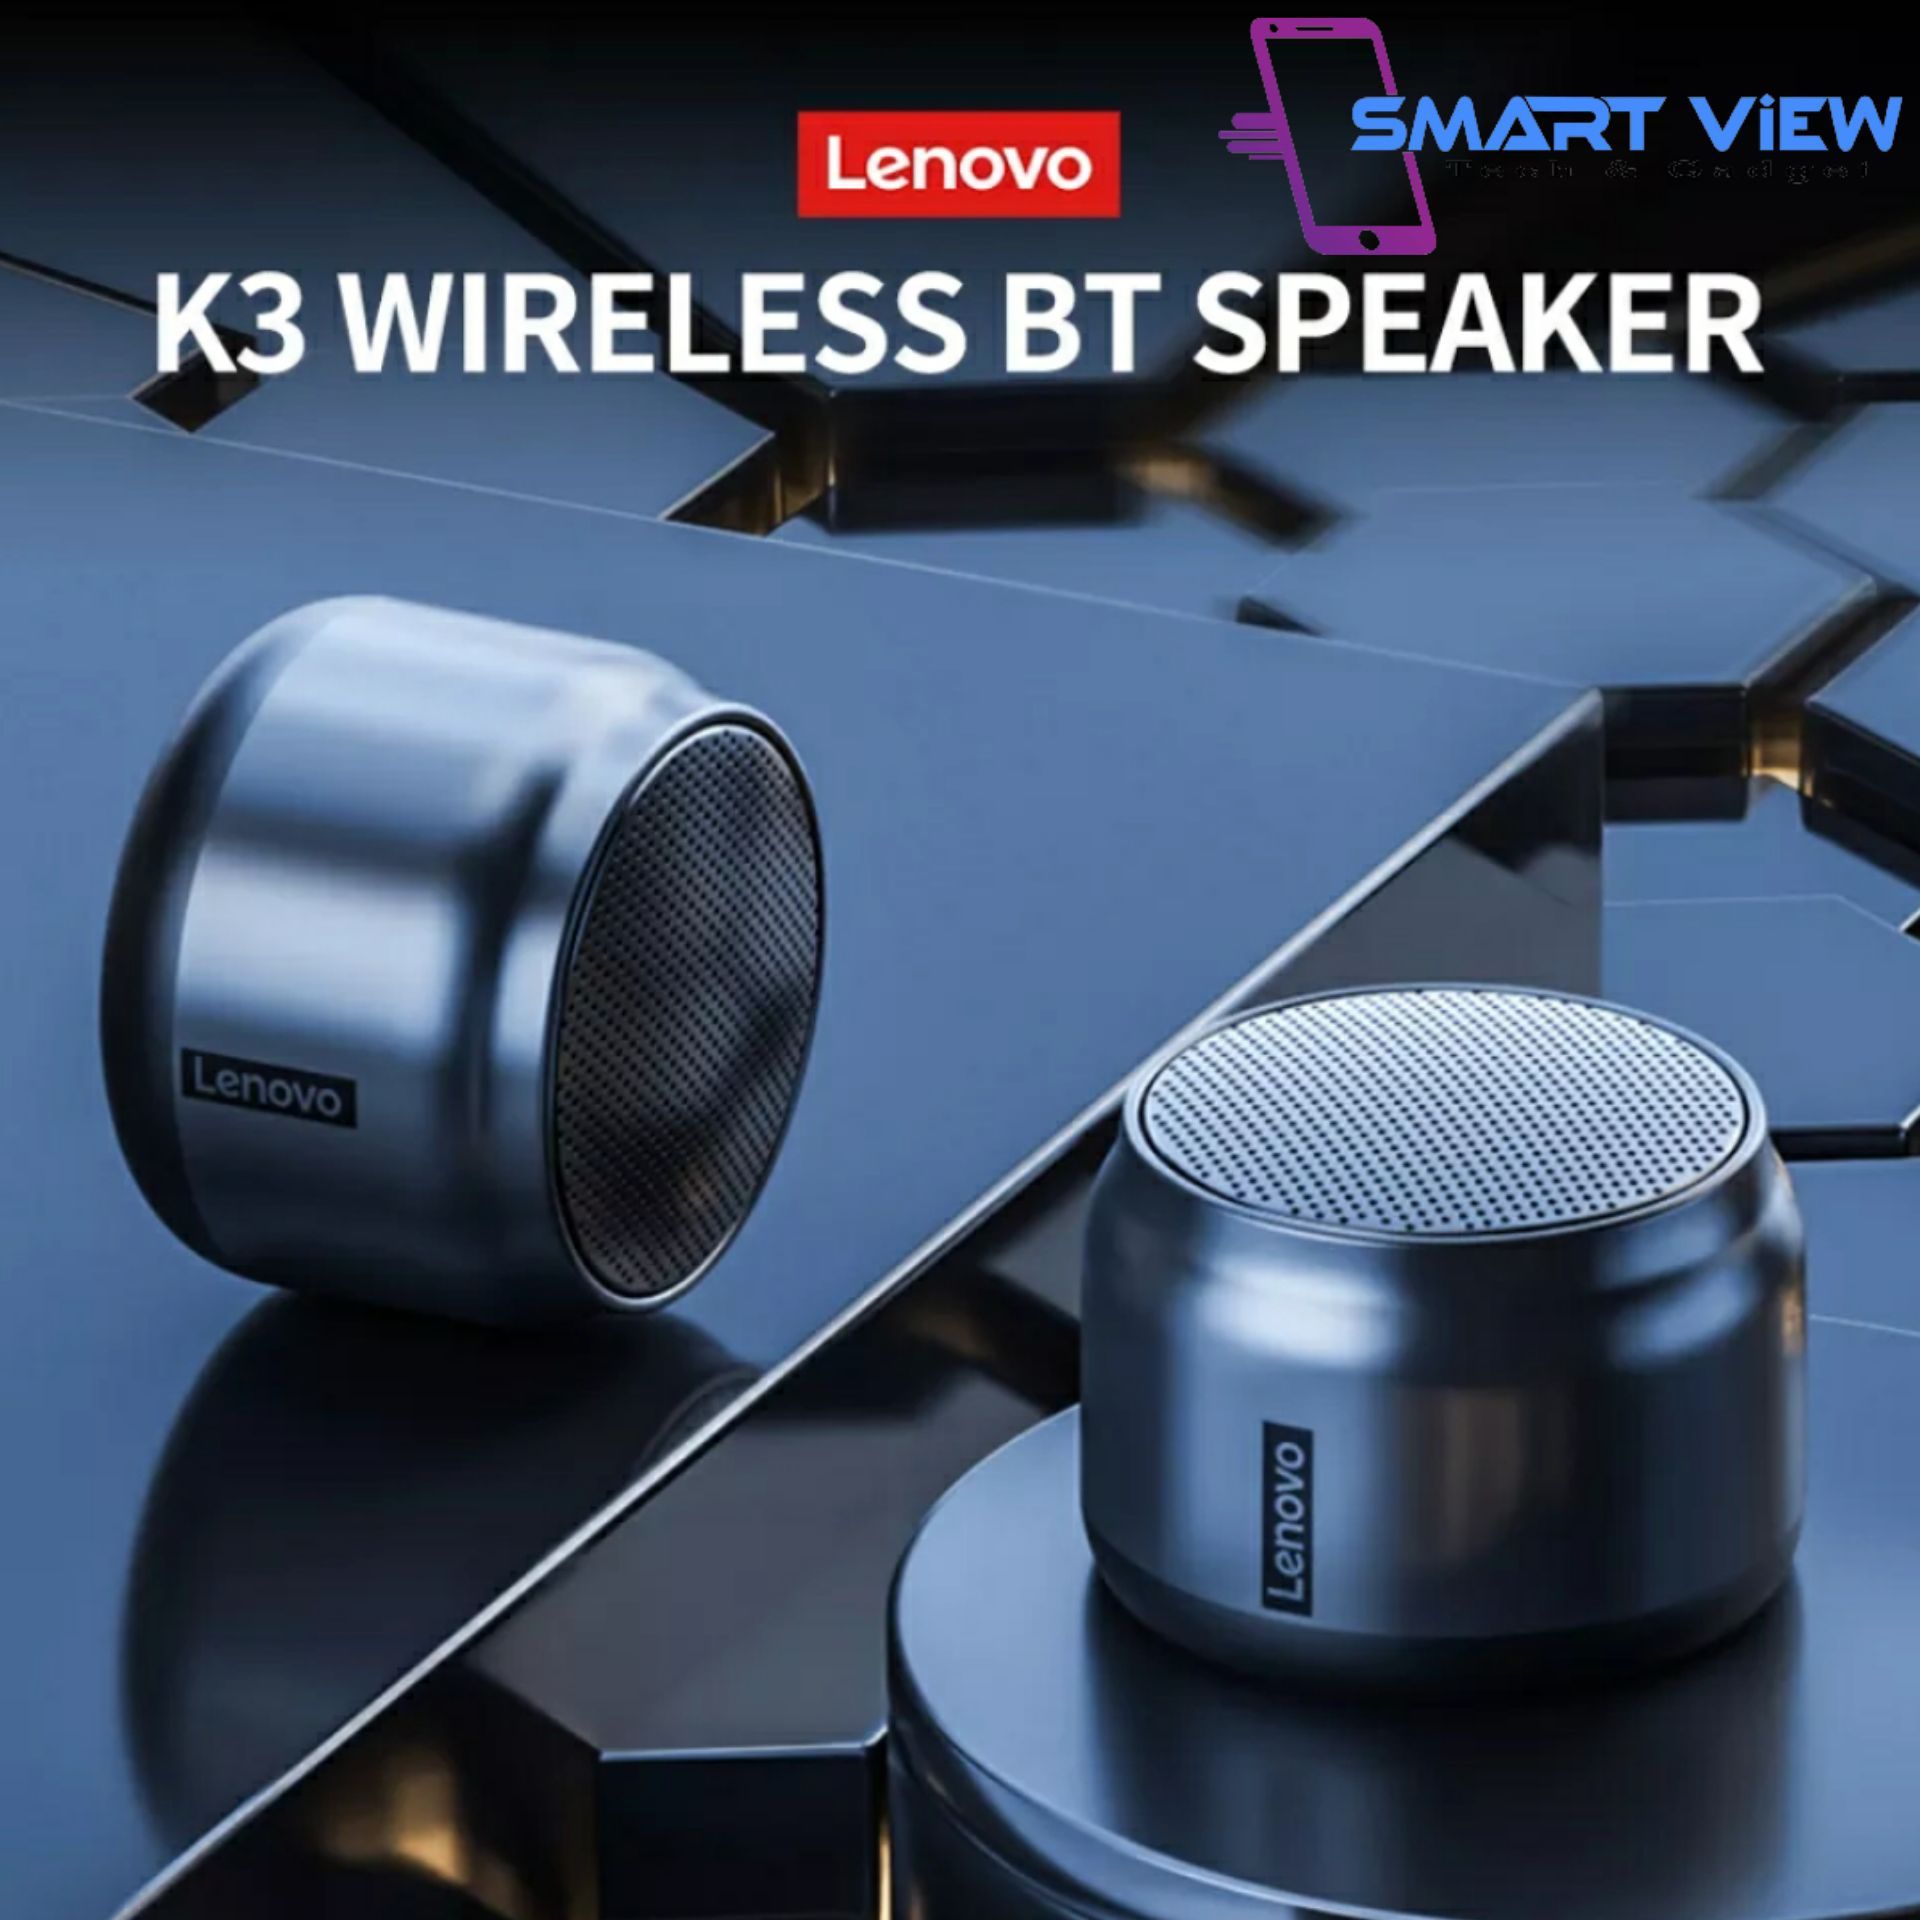 Lenovo K3 Wireless BT Speaker Portable Wireless Stereo Speaker Audio Player 3D Stereo Surround Sound Long Endurance Time